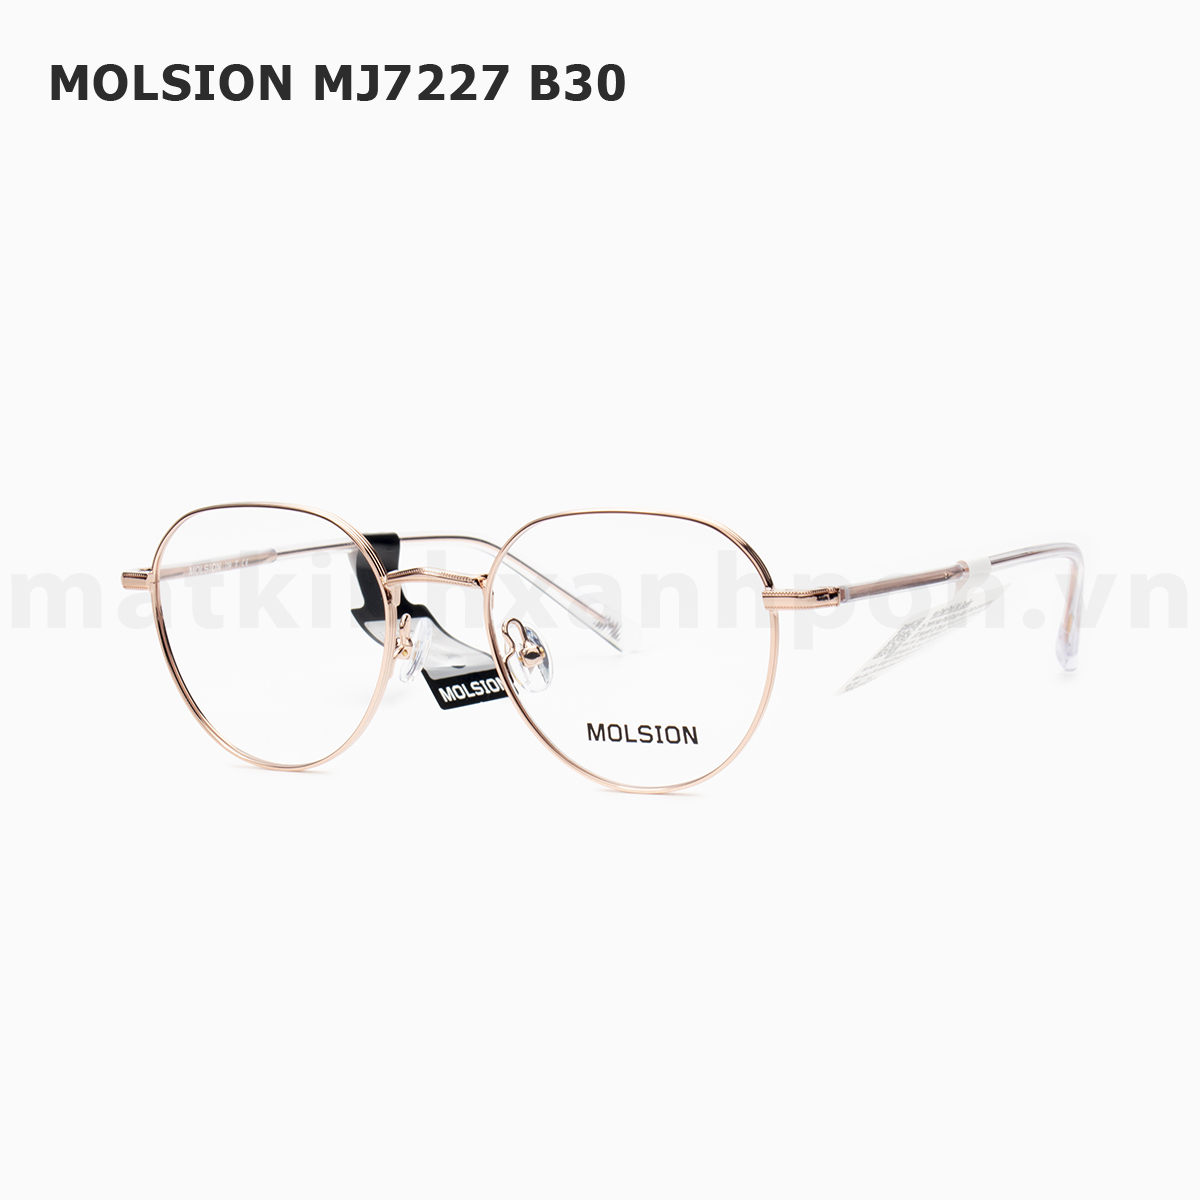 MOLSION MJ7227 B30